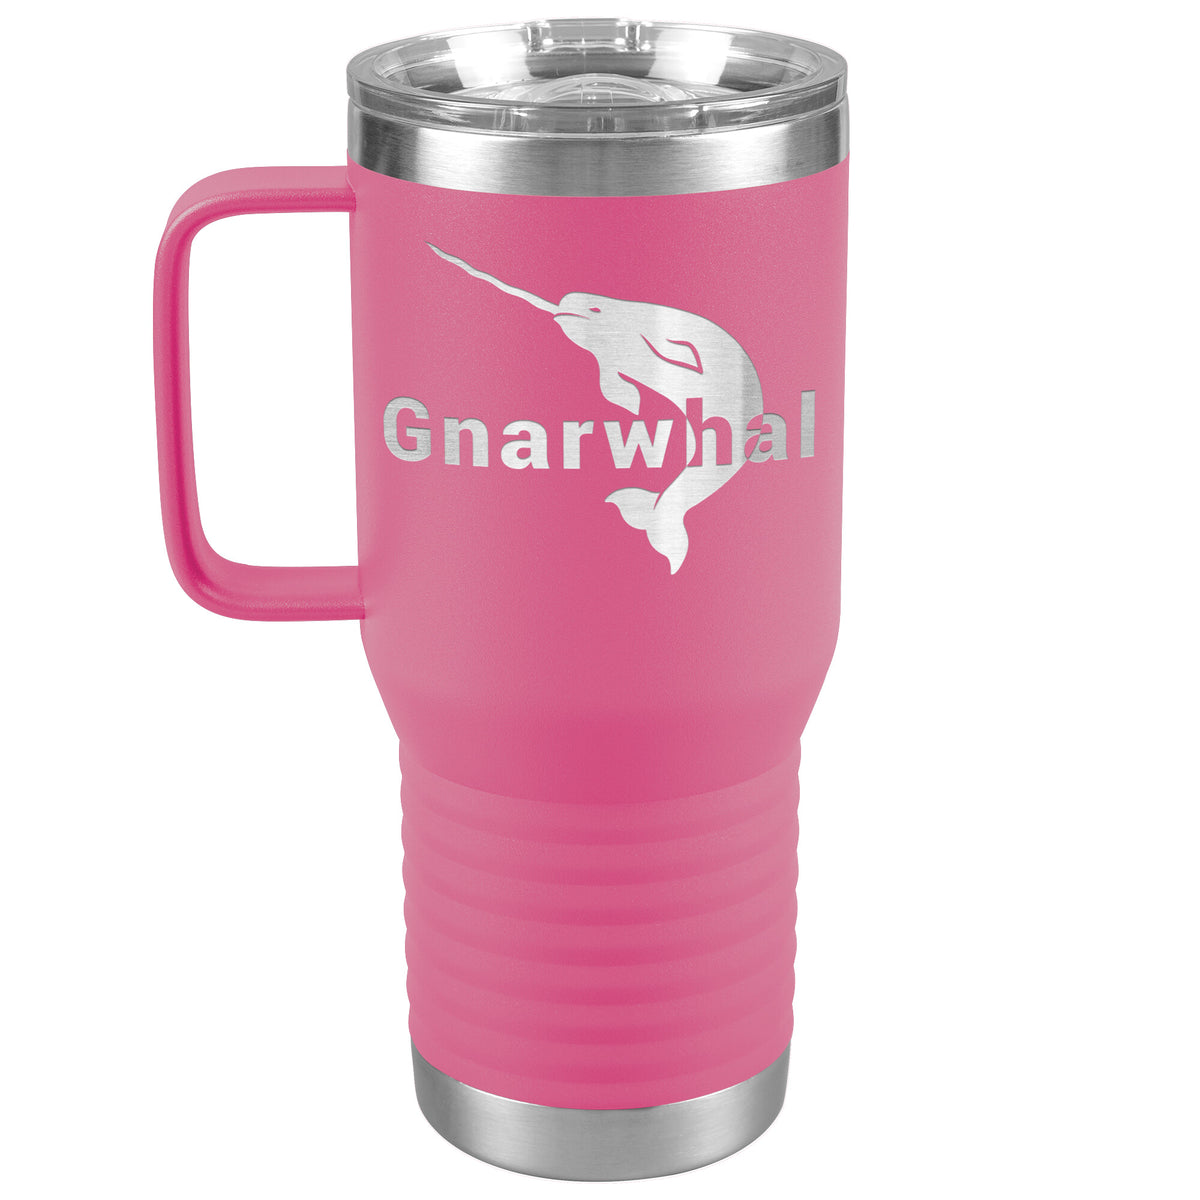 Gnarwhal Travel Mug